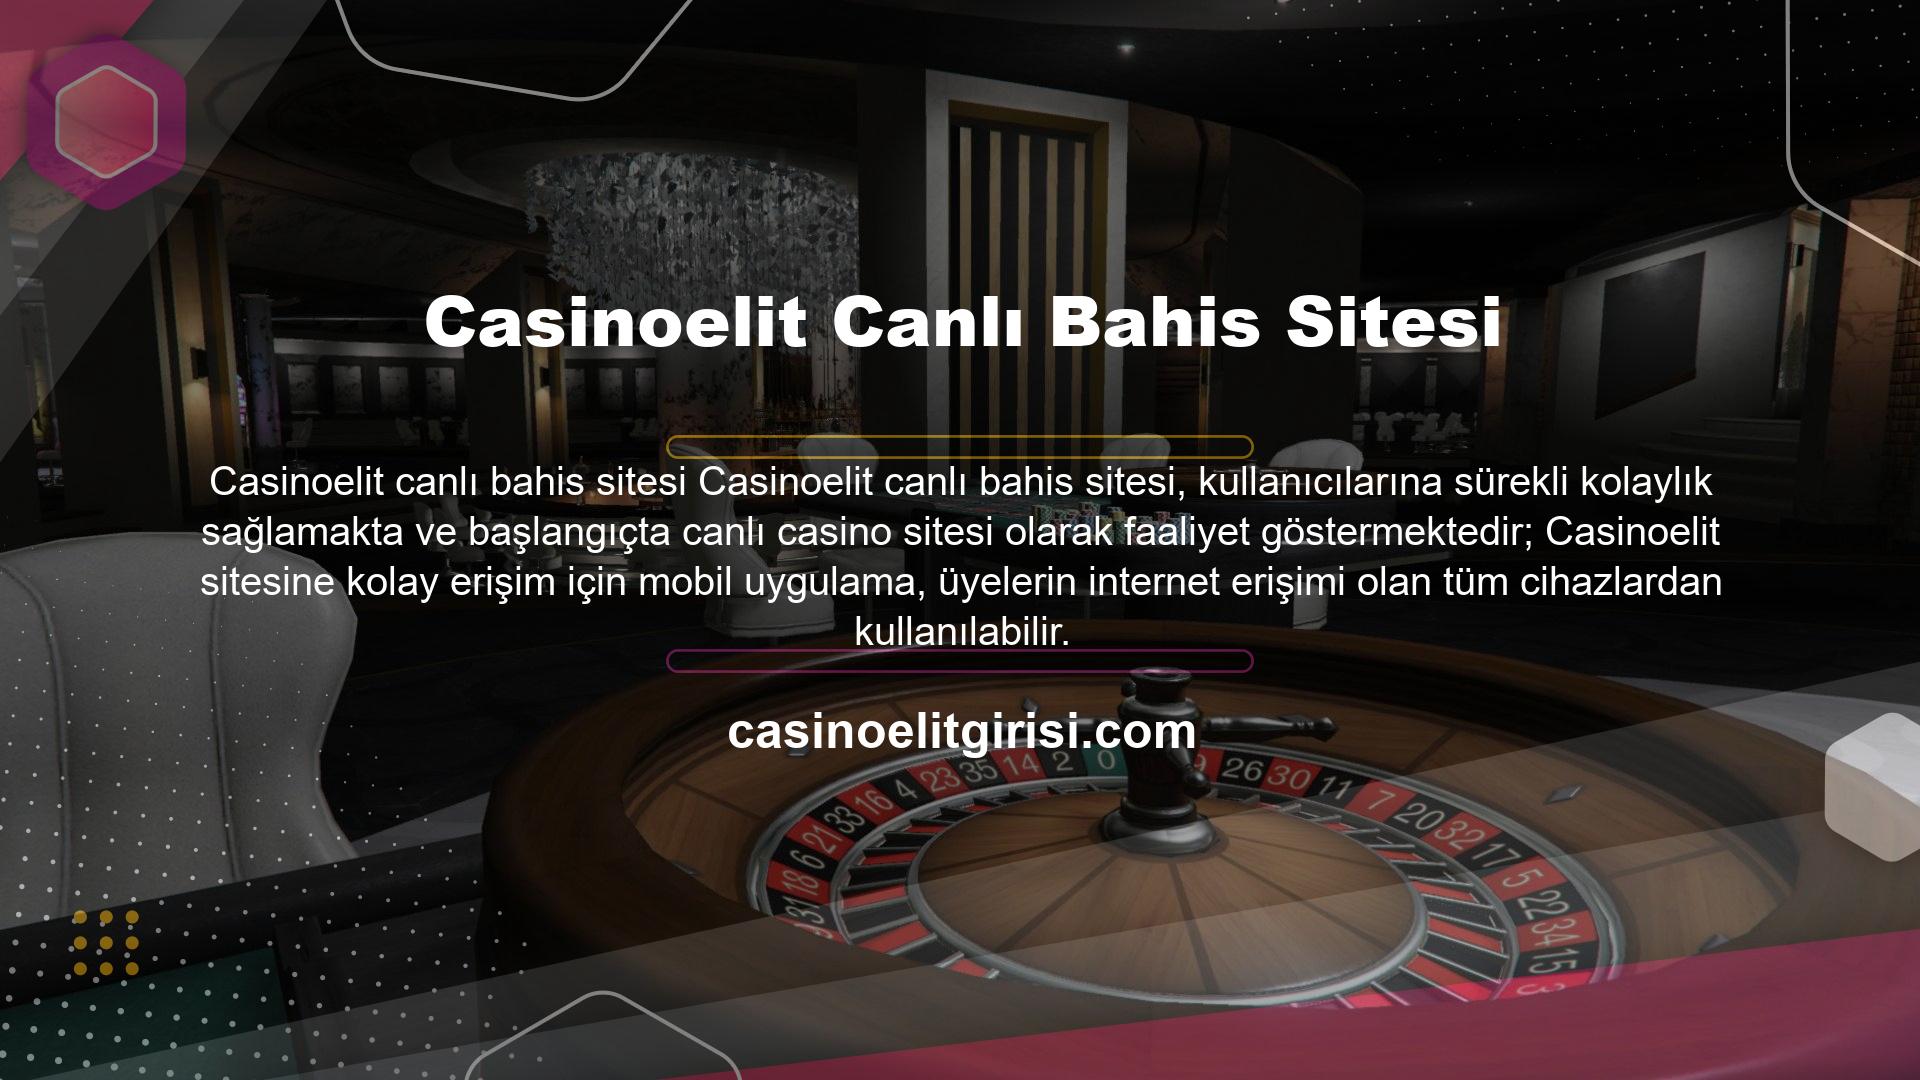 İnternete bağlı herhangi bir cihazdan siteye giriş yapabilir ve canlı casino oyunları oynayabilirsiniz